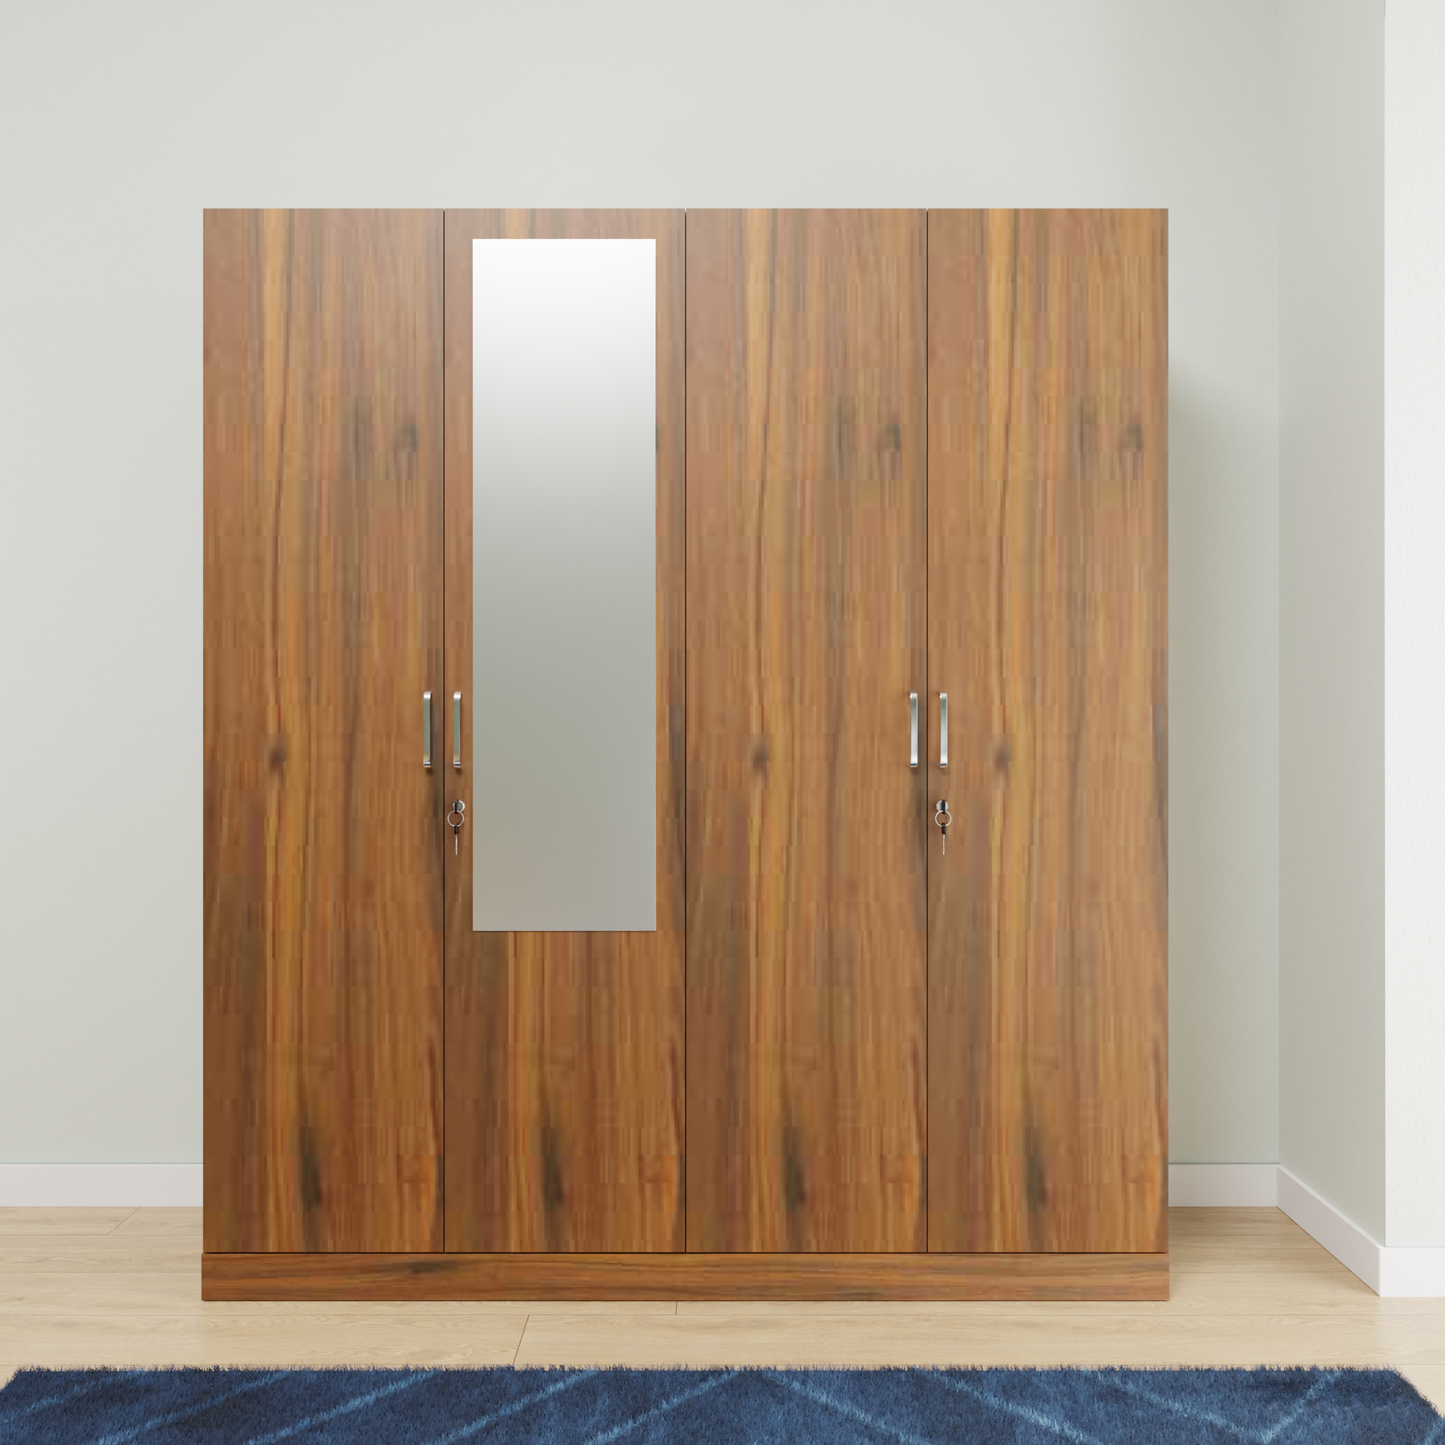 AVIRA |Wardrobe with Mirror, Hinged | 4 Door, Shelf, Hanging Space Wardrobes VIKI FURNITURE   